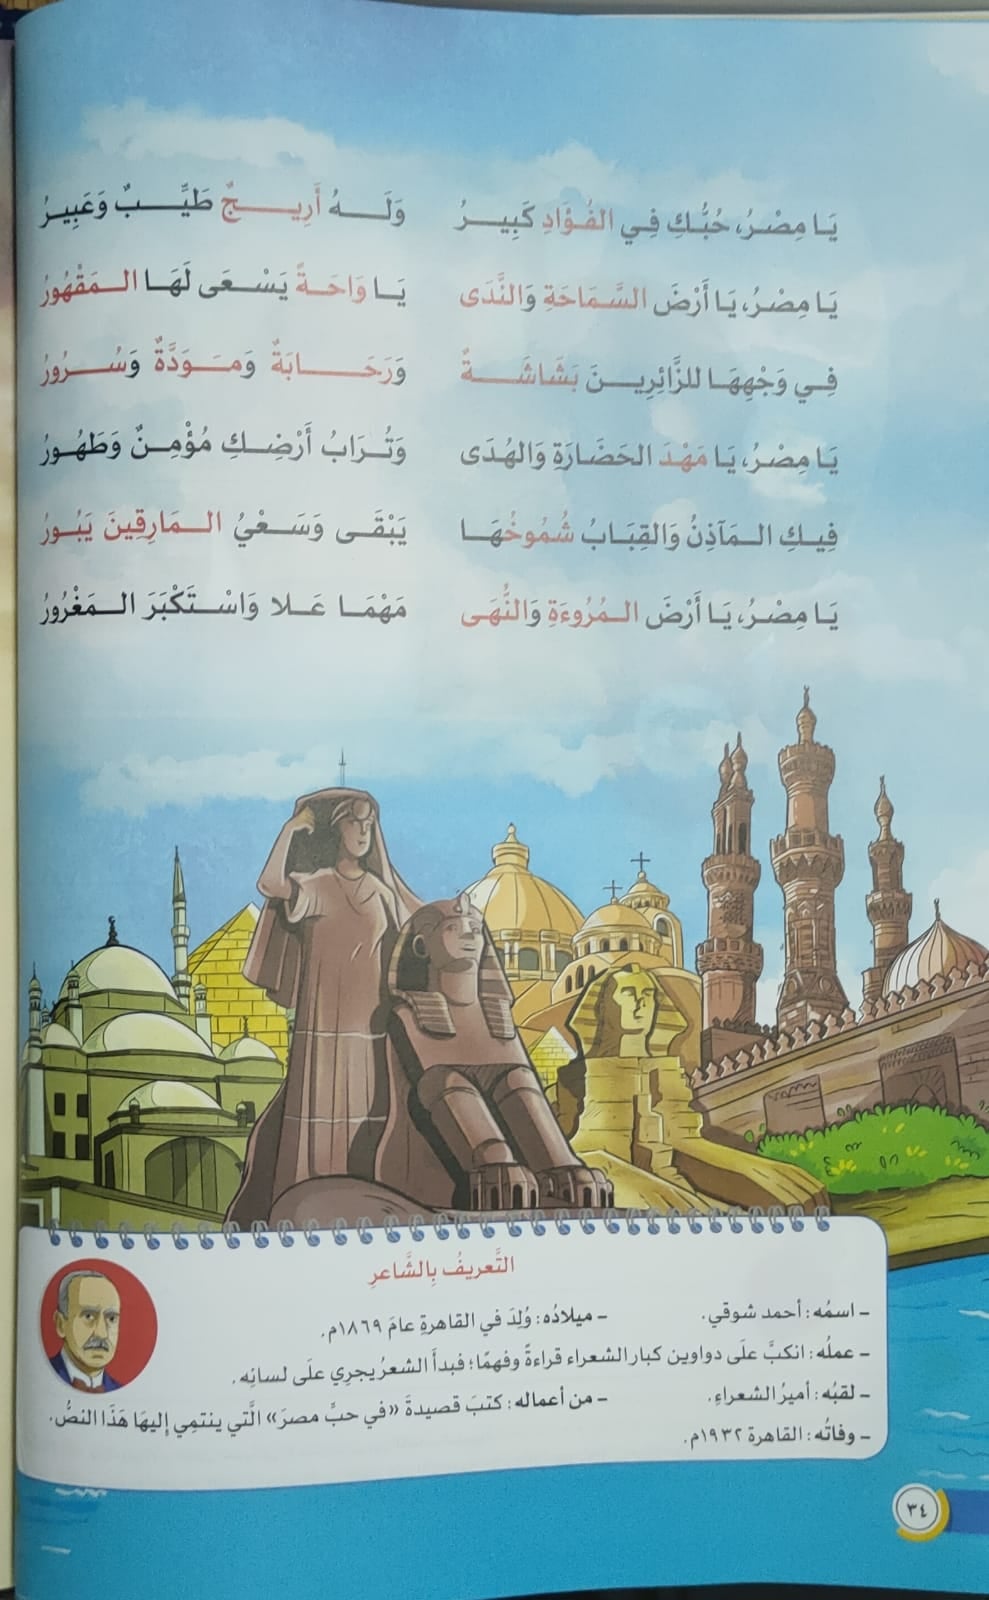 التفاصيل الكاملة حول قصيدة "يامِصرُ" والخطأ الفادح الذي أثار ضجةً عارمةً على مواقع التواصل الإجتماعي وردٌ مثير من وزارة التربية والتعليم المصرية 